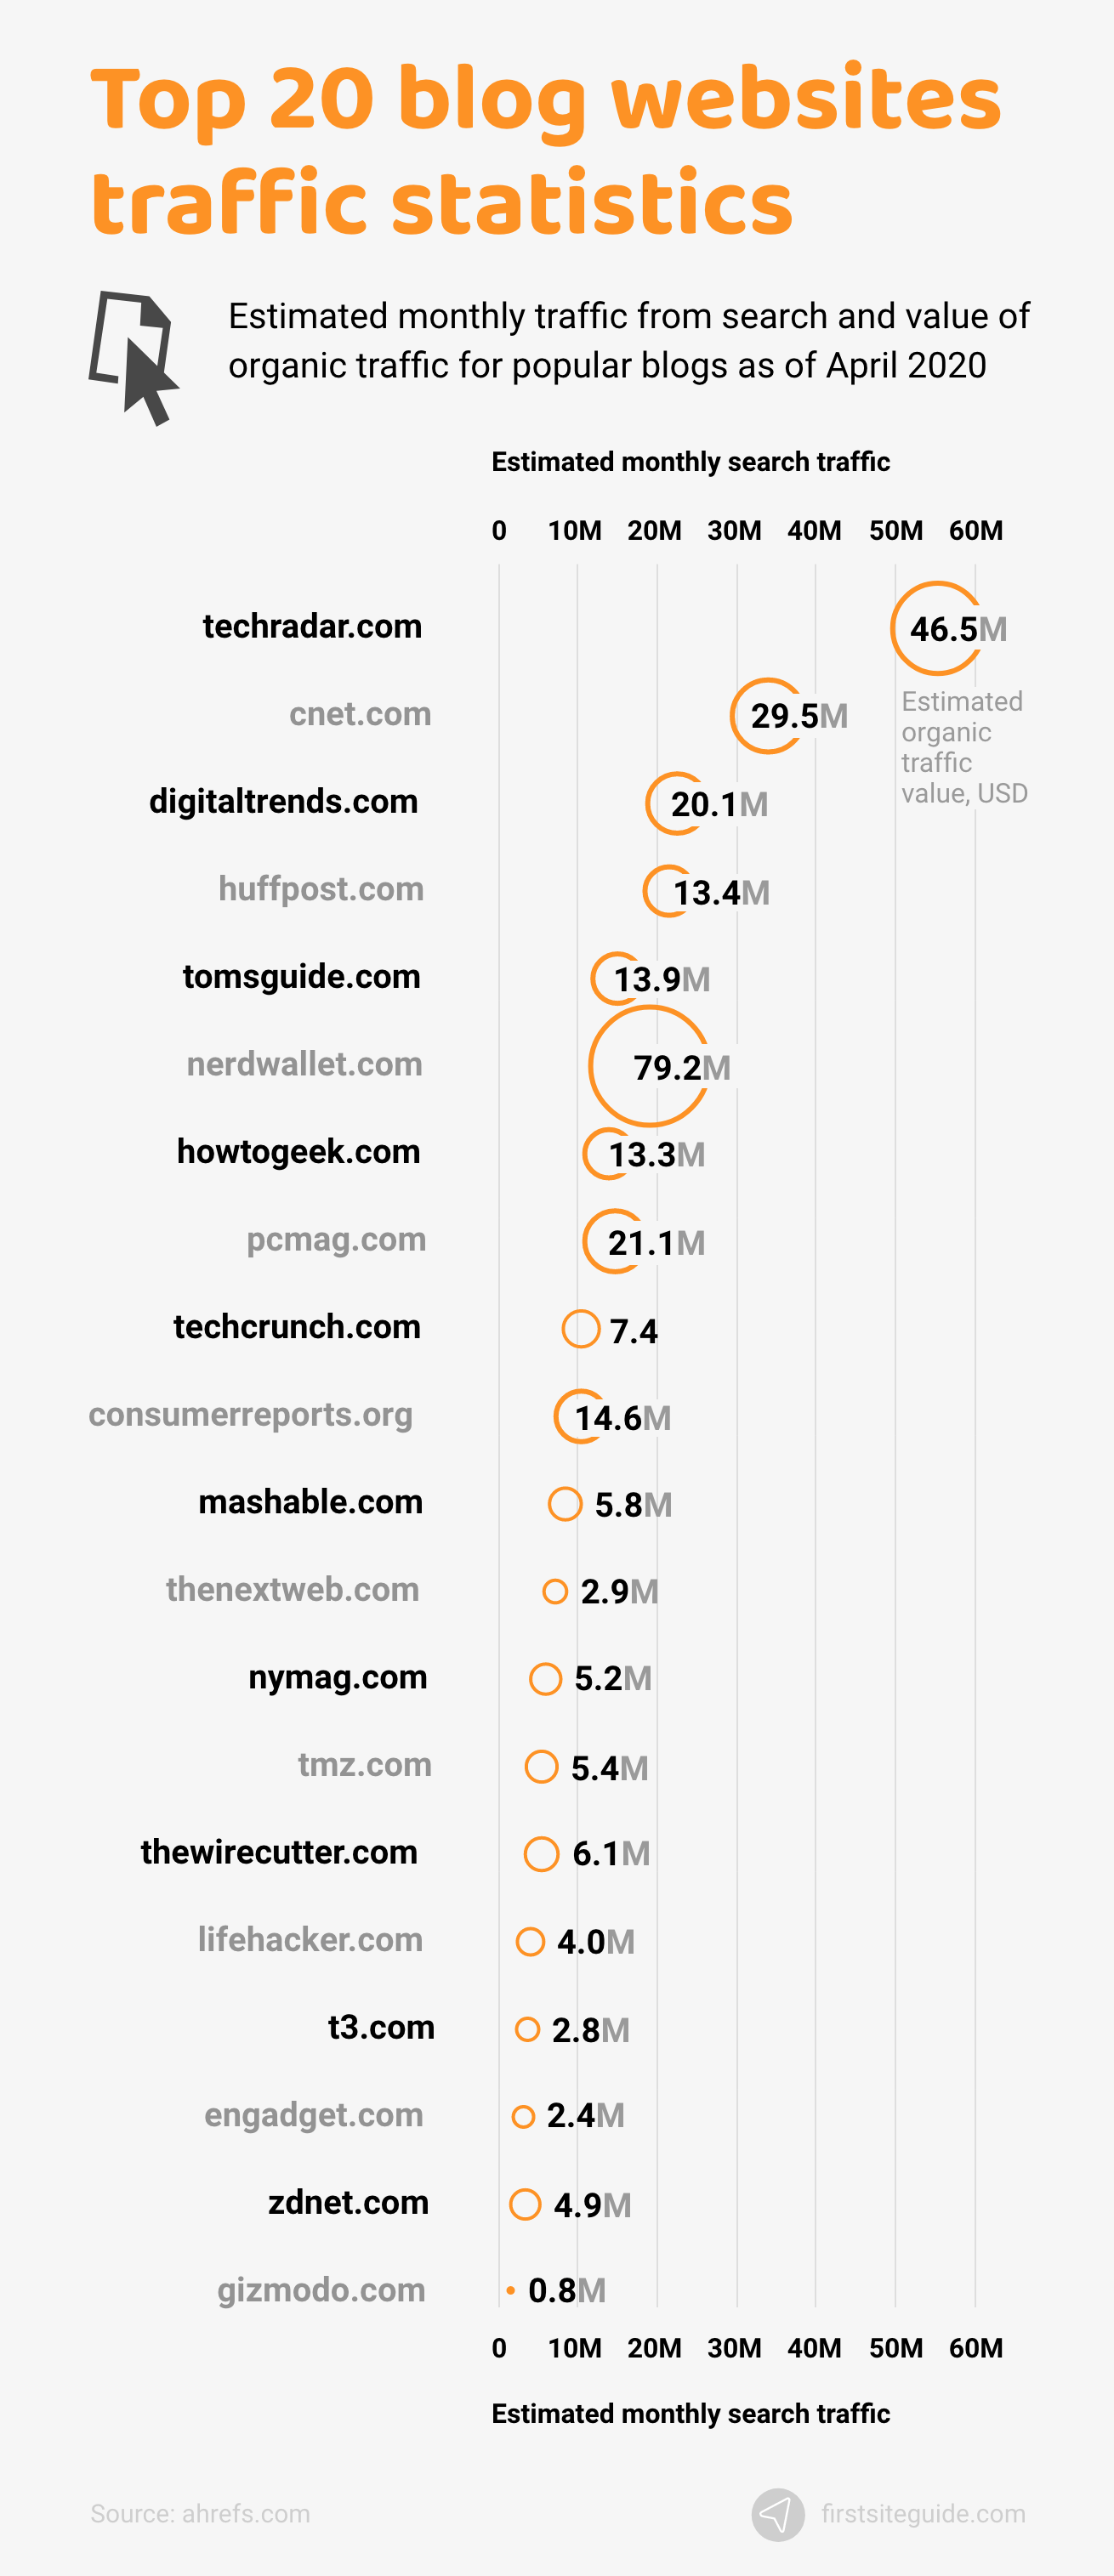 상위 20개 블로그 웹사이트 트래픽 통계